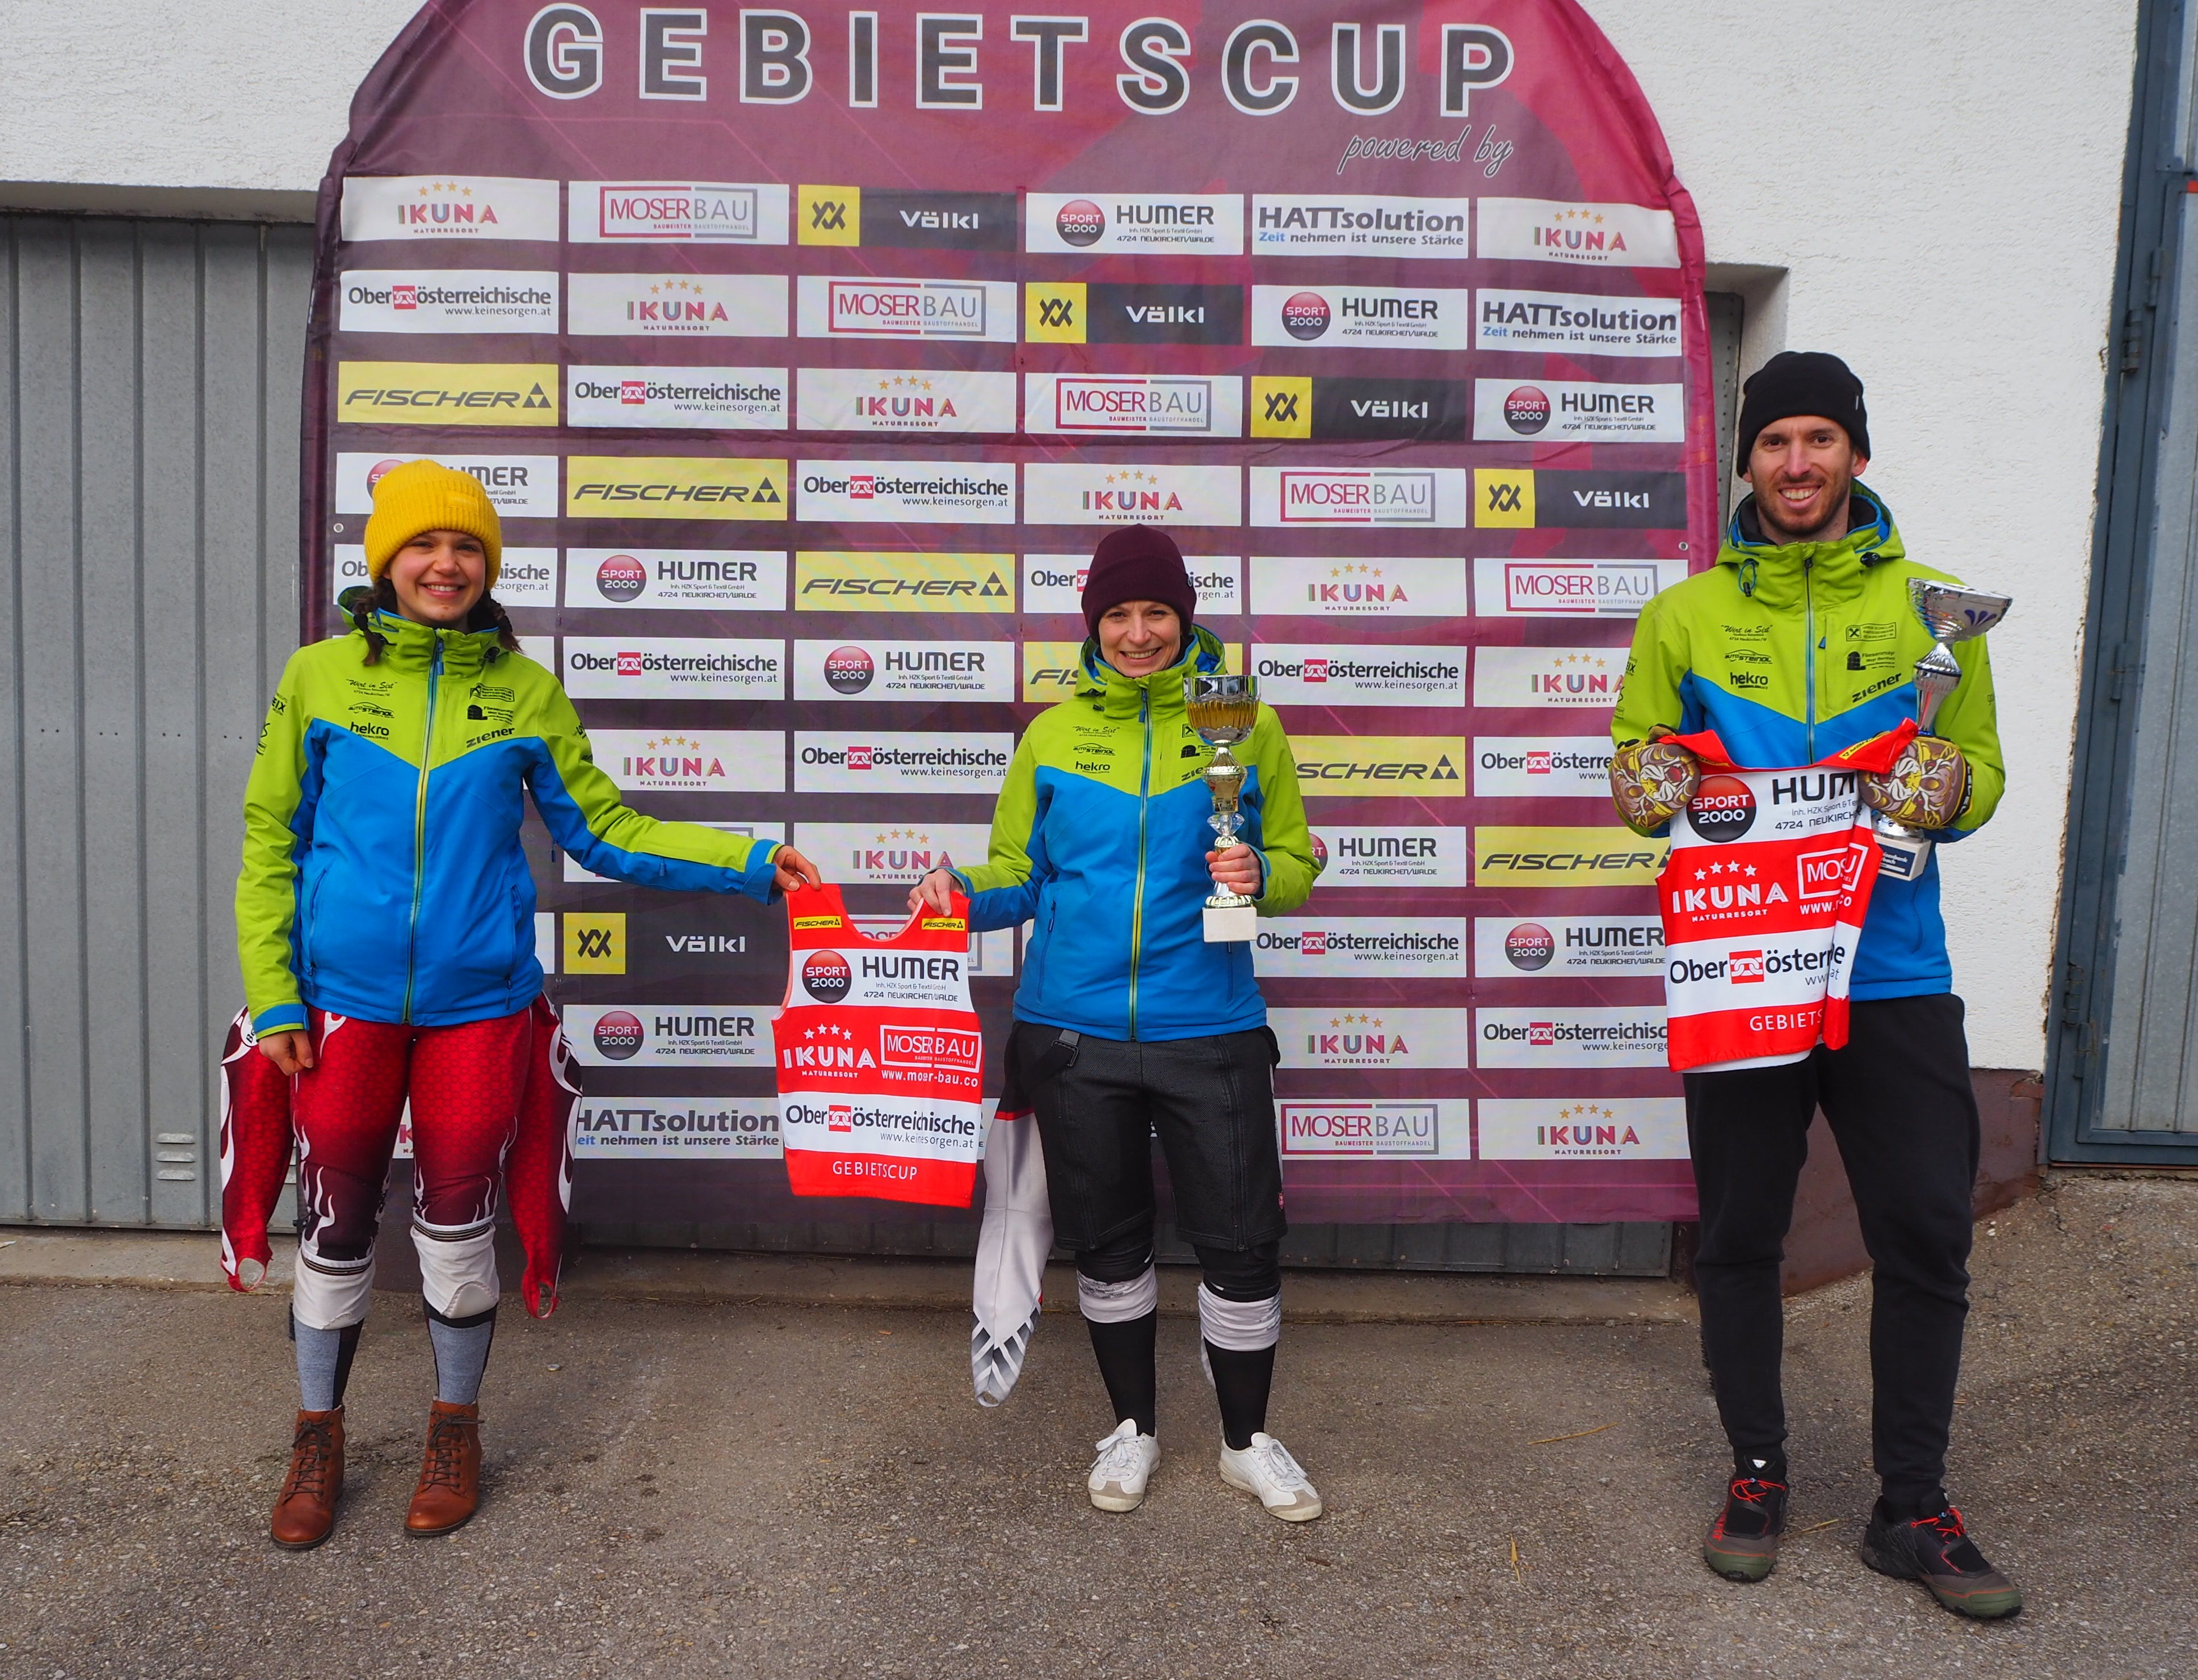 Stefan Huber und Victoria Höretzeder gewinnen Gebietscup Slalom